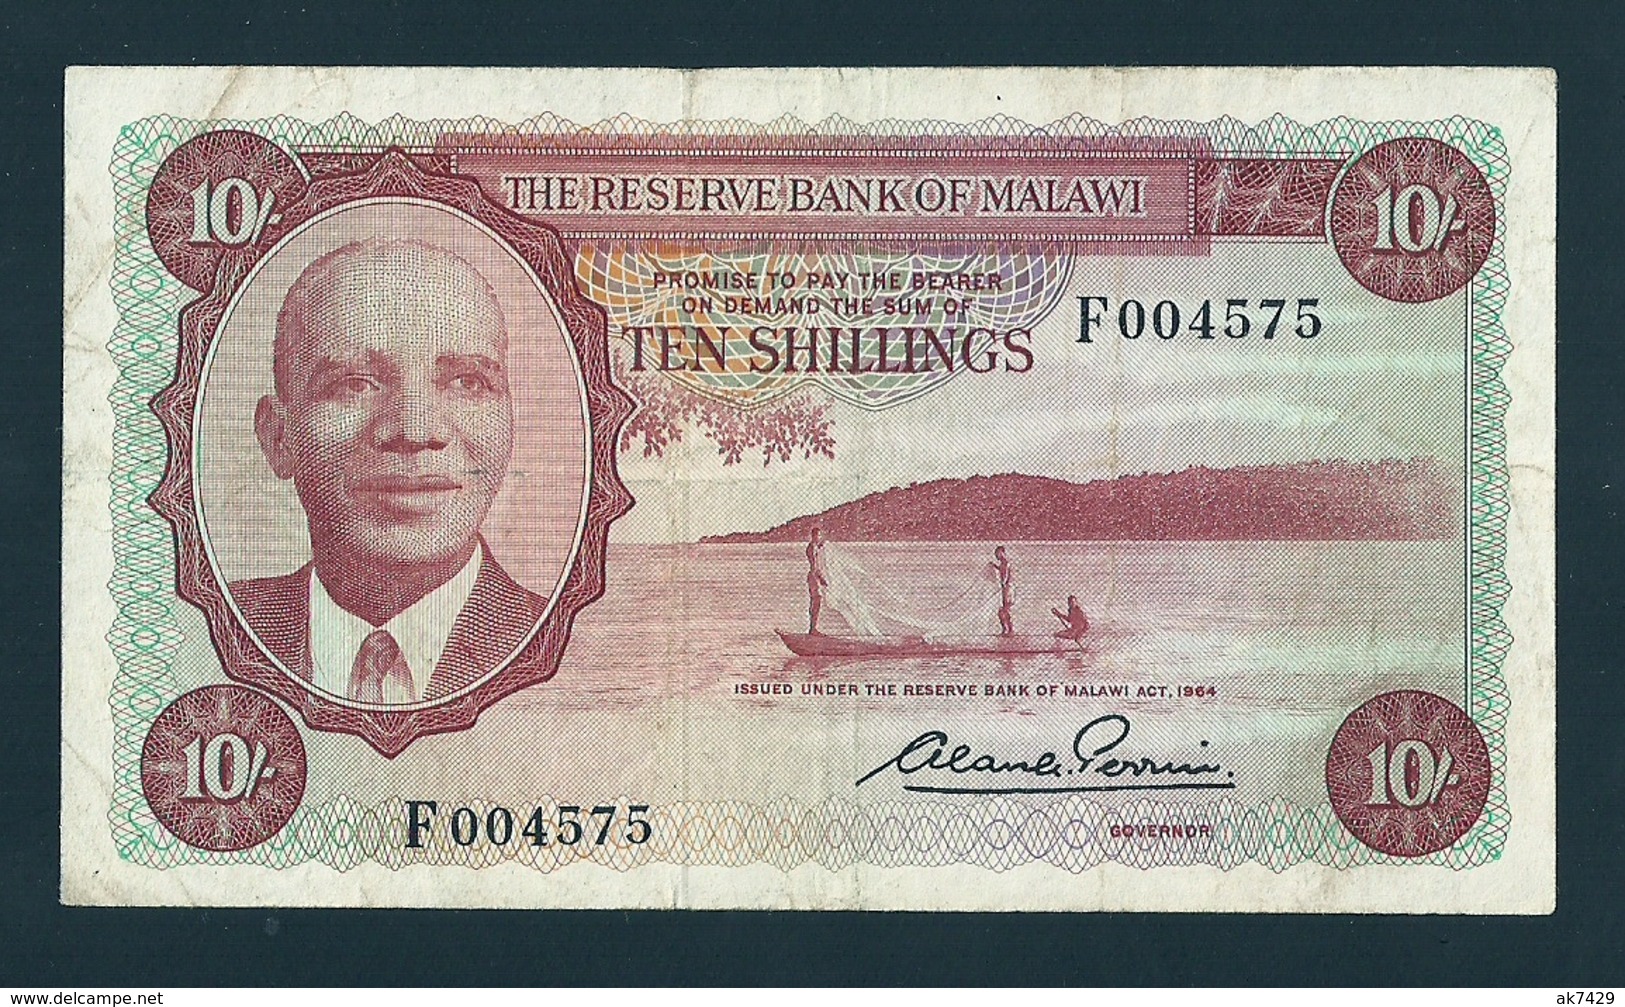 MALAWI 10 SHILLNGS 1964 LOW # 004575 P#2 VF BANKNOTE - Malawi